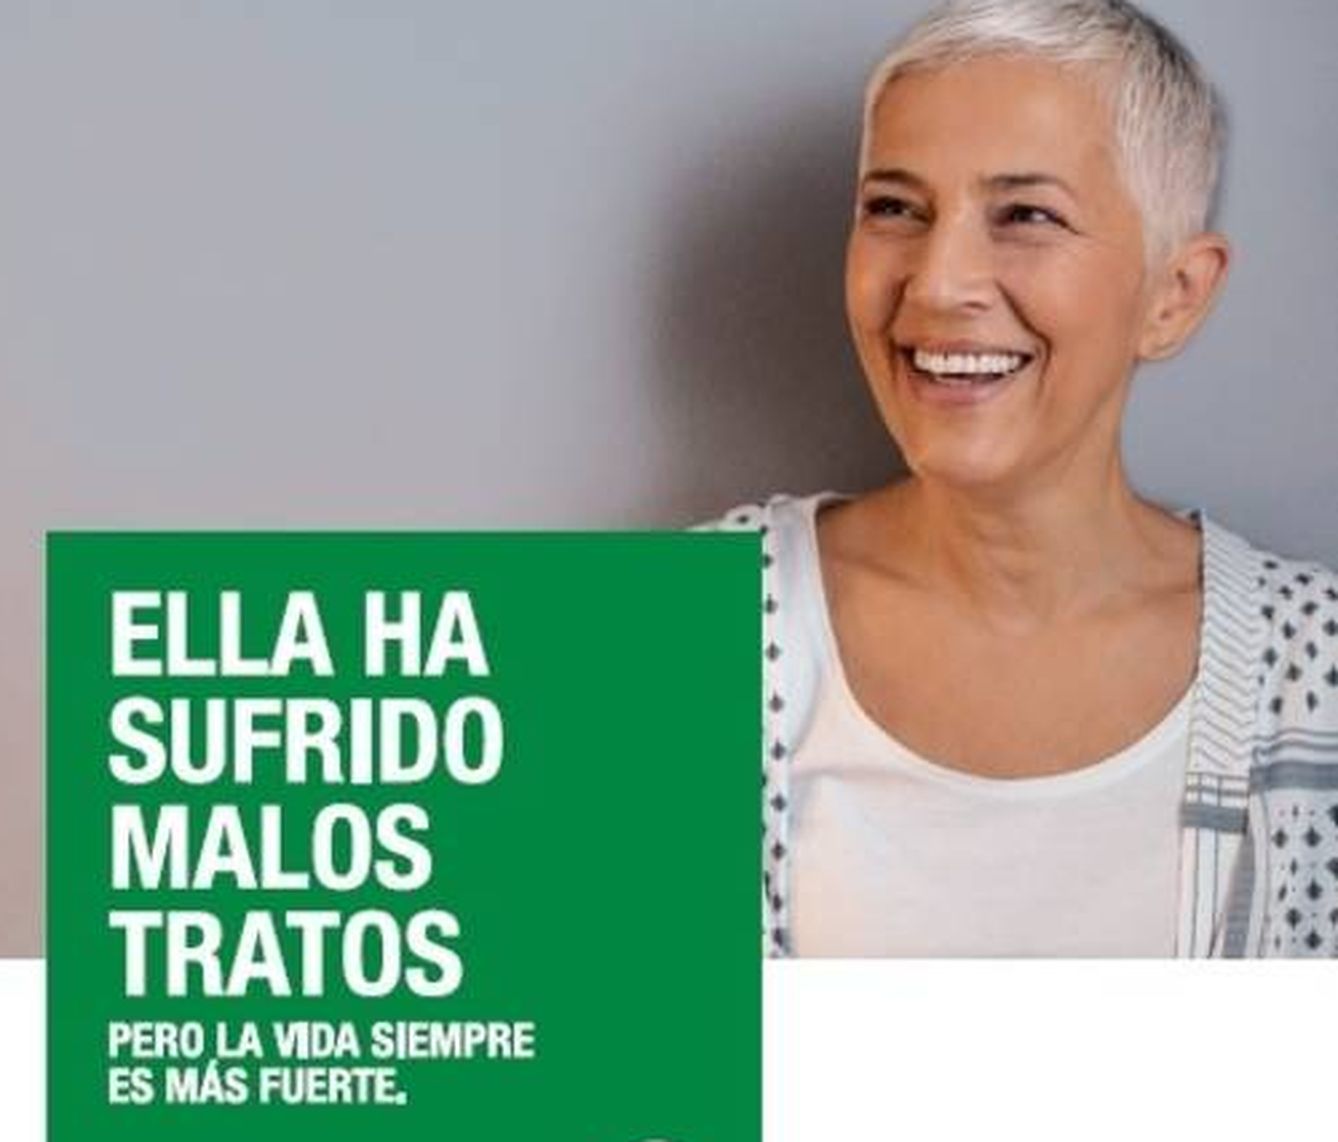 Campaña de la Junta de Andalucía, que usa una imagen de una modelo extranjera.